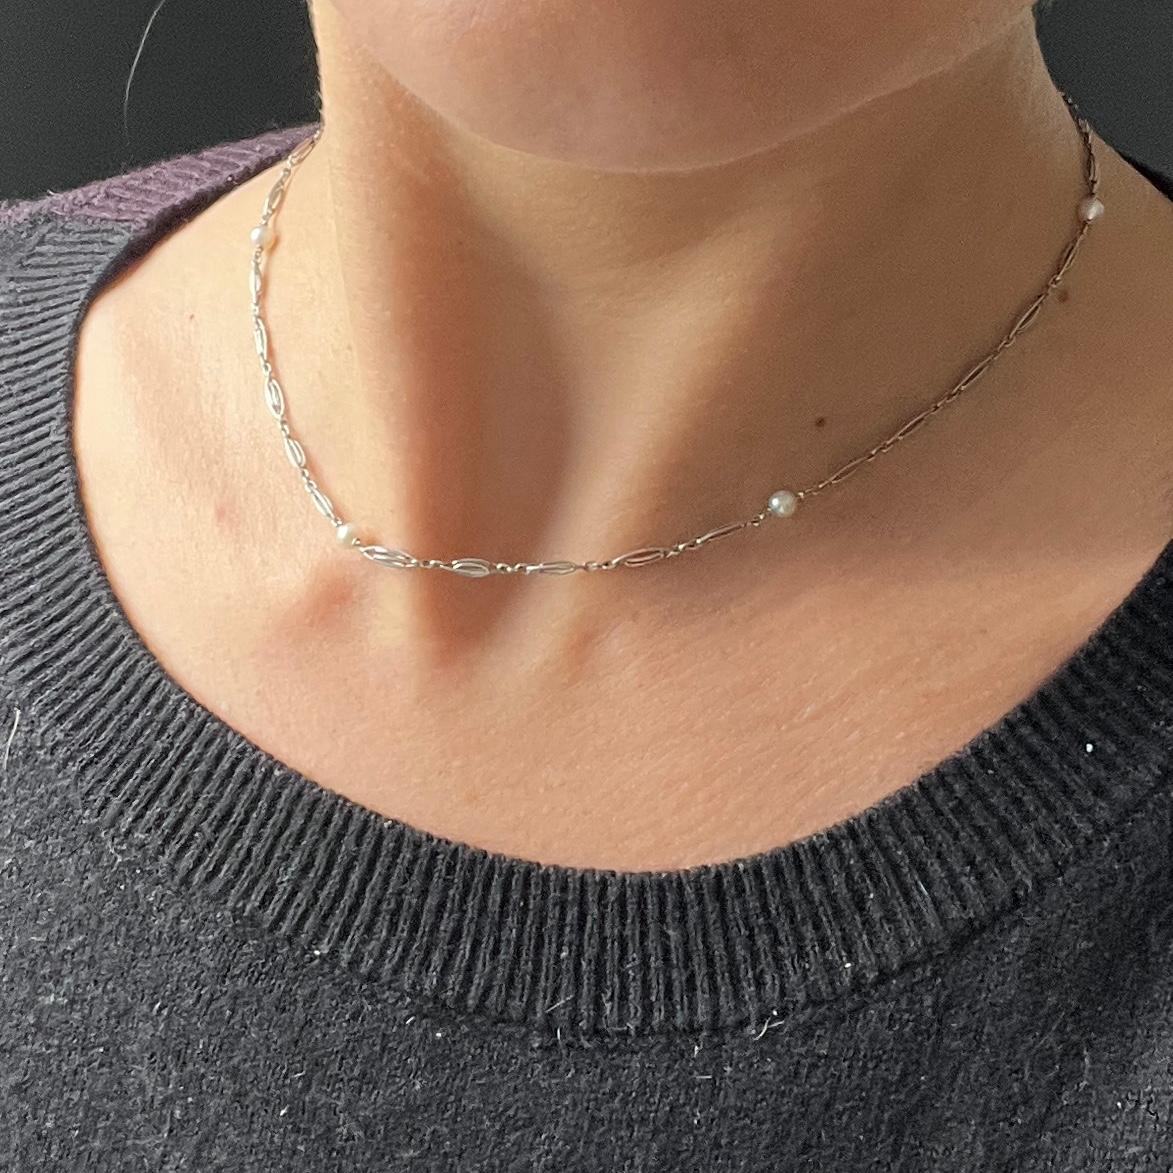 Ce collier très délicat est composé d'une chaîne en platine fine et détaillée et d'une seule pièce de monnaie.  perles. 

Longueur : 37 cm
Diamètre de la perle : 4 mm

Poids : 4.8 g